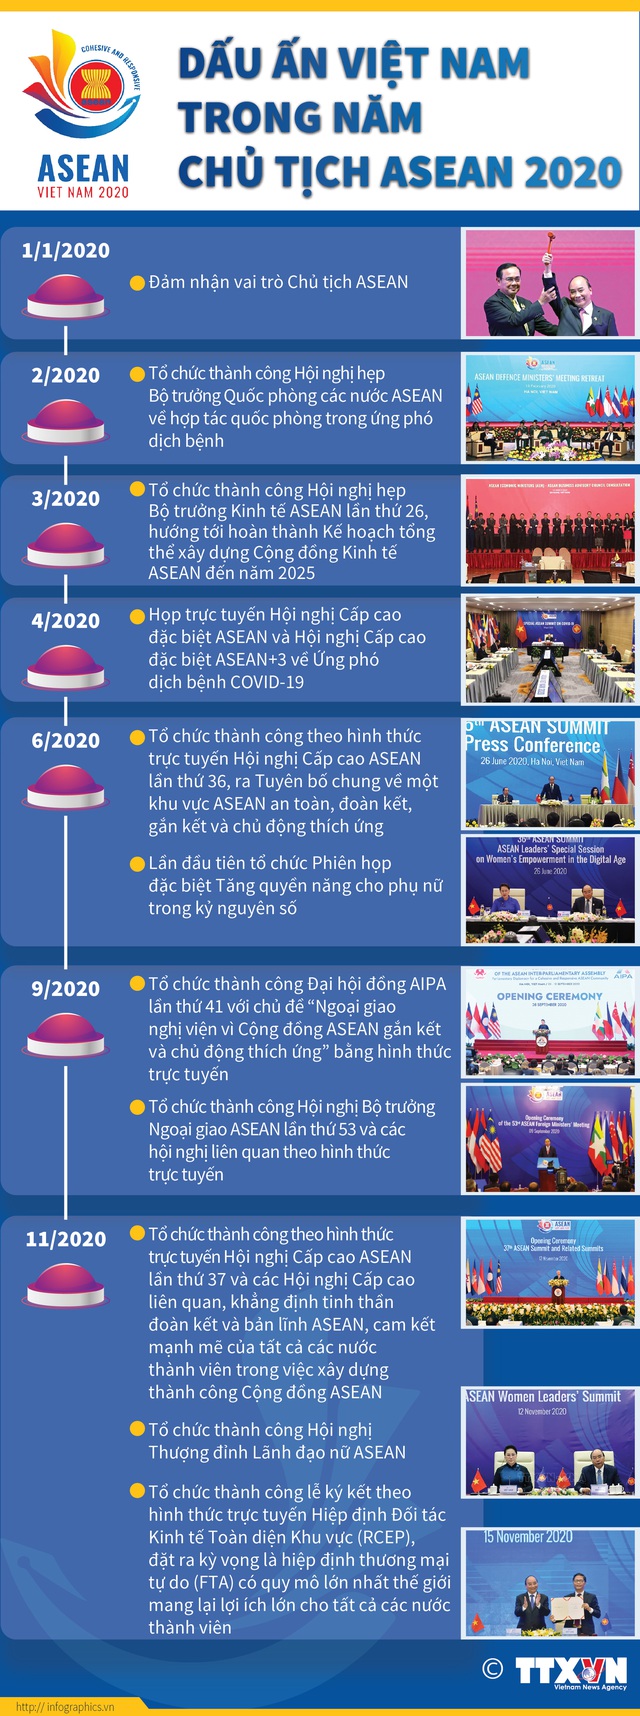 [INFOGRAPHIC] Dấu ấn Việt Nam trong Năm Chủ tịch ASEAN 2020 - Ảnh 1.